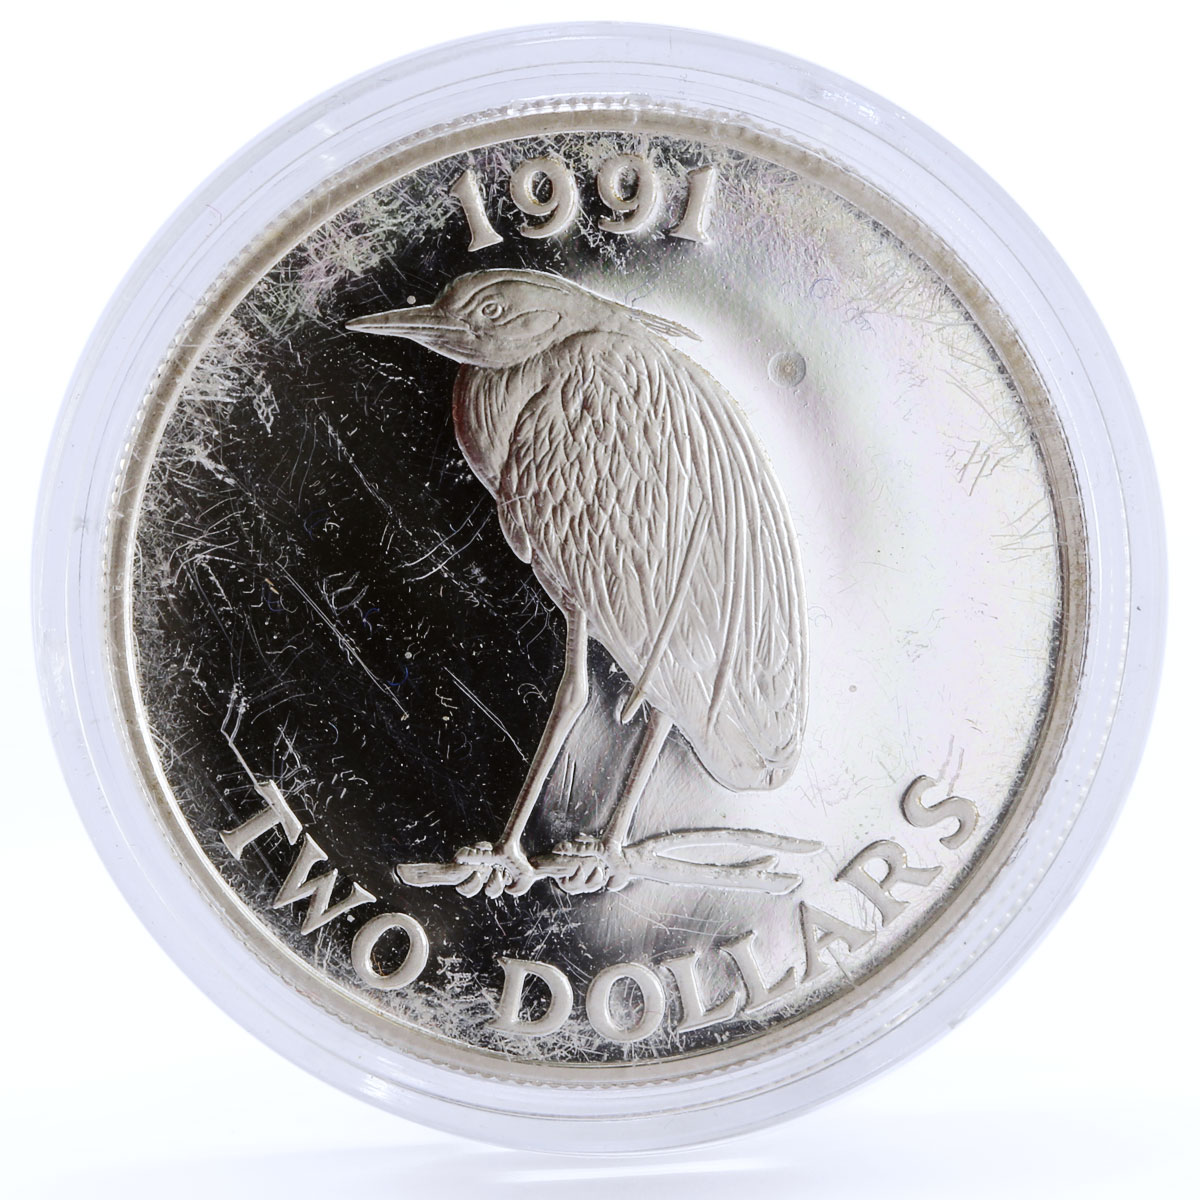 Bermuda 2 dollars Endangered Wildlife Yellow Night Heron Bird silver coin 1991